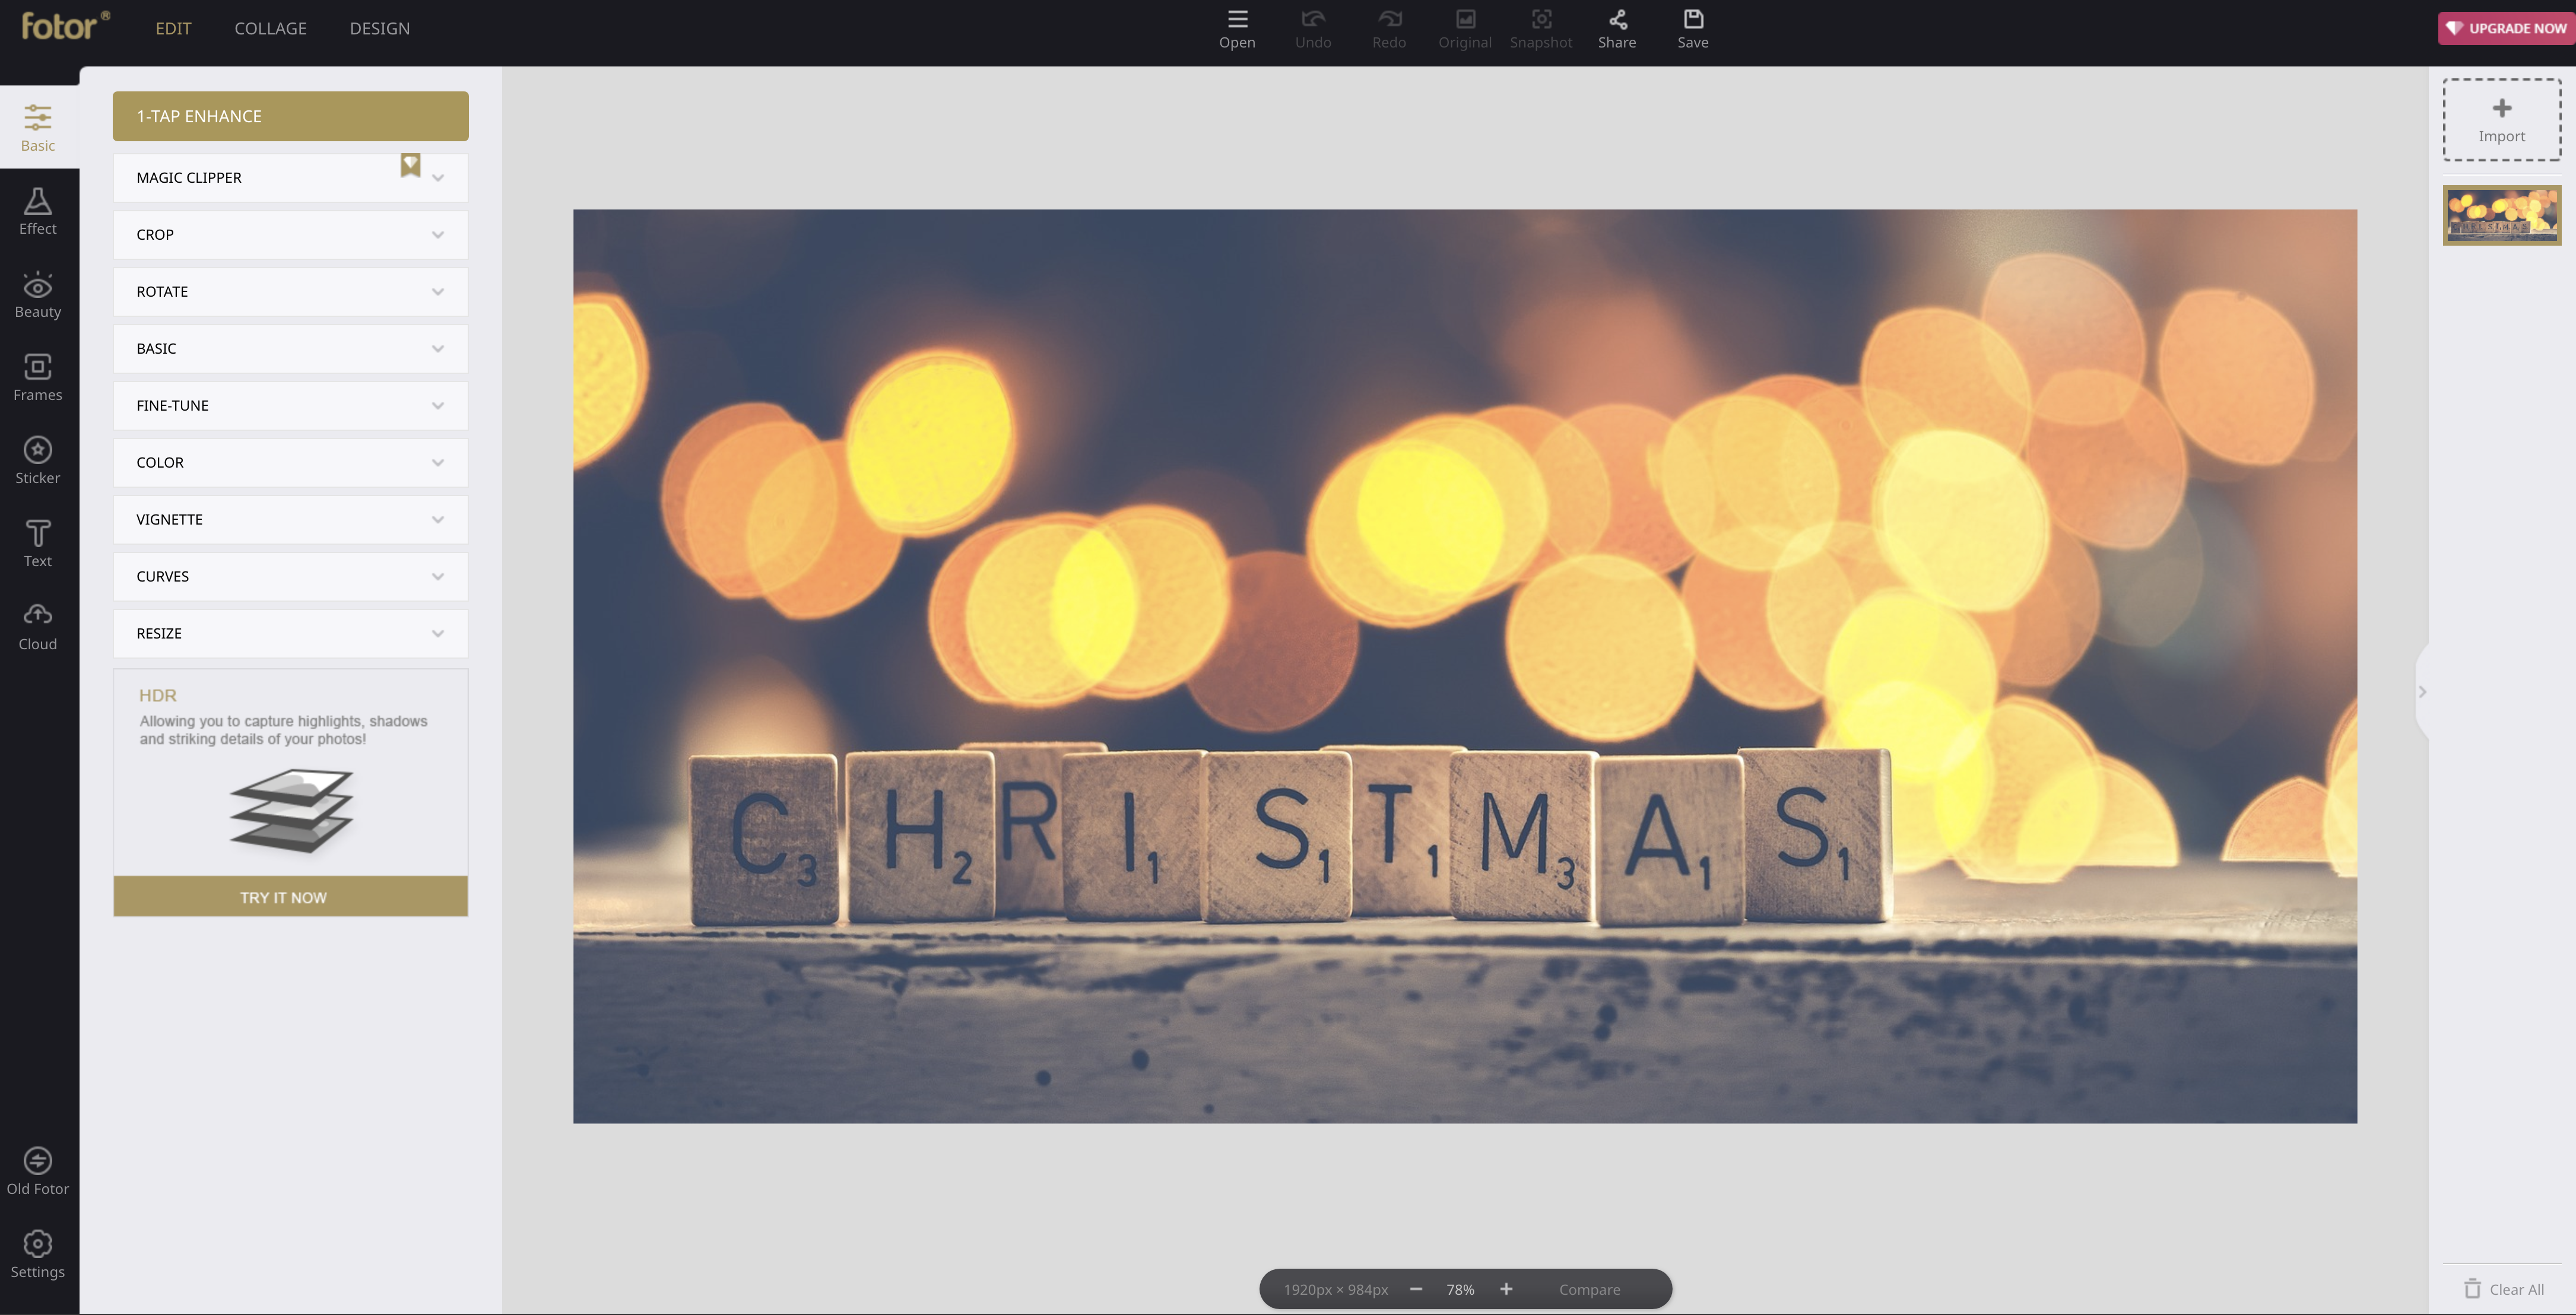 Uitgelezene Maak een last-minute kerstkaart met je eigen foto | digifoto Starter CM-58